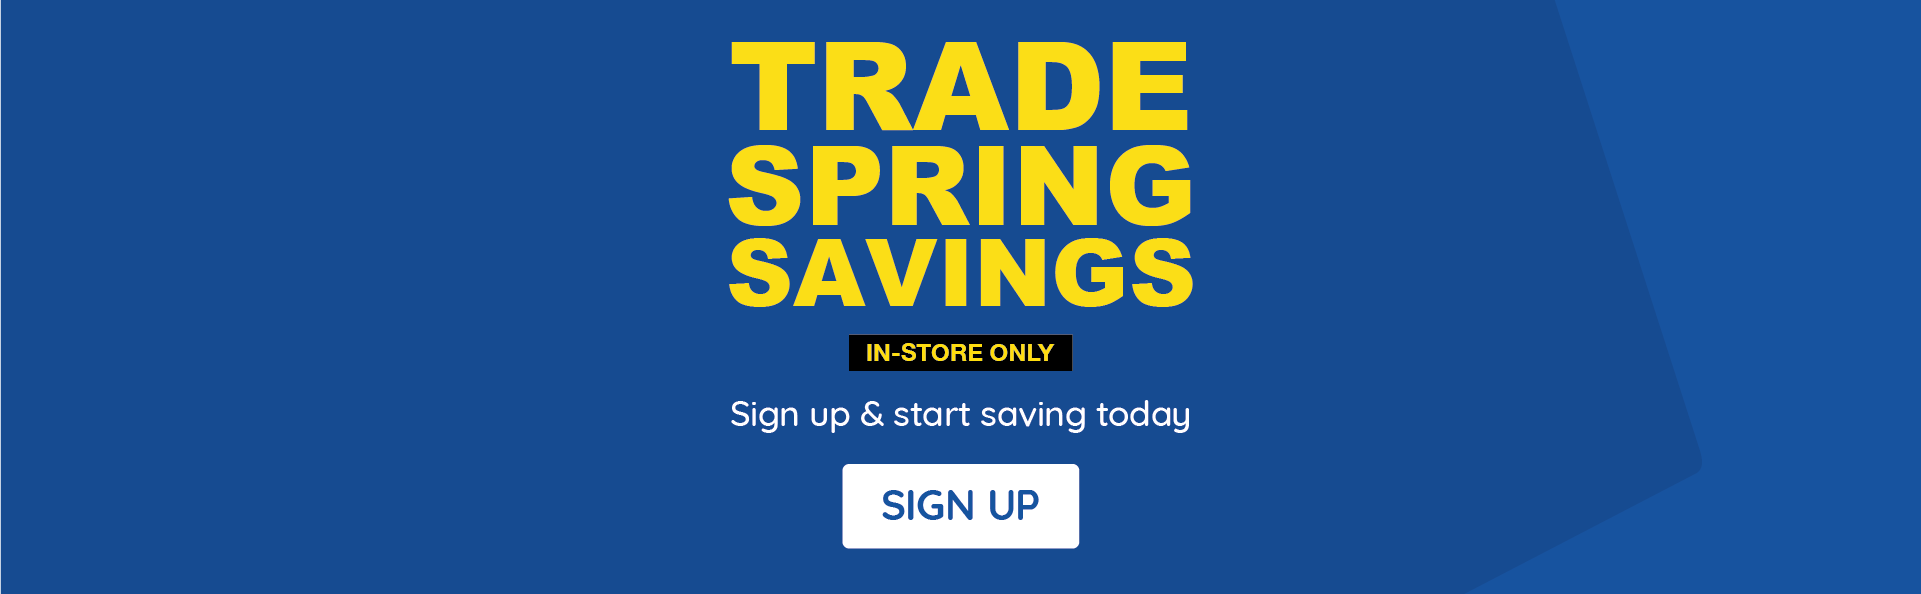 Trade Spring Savings